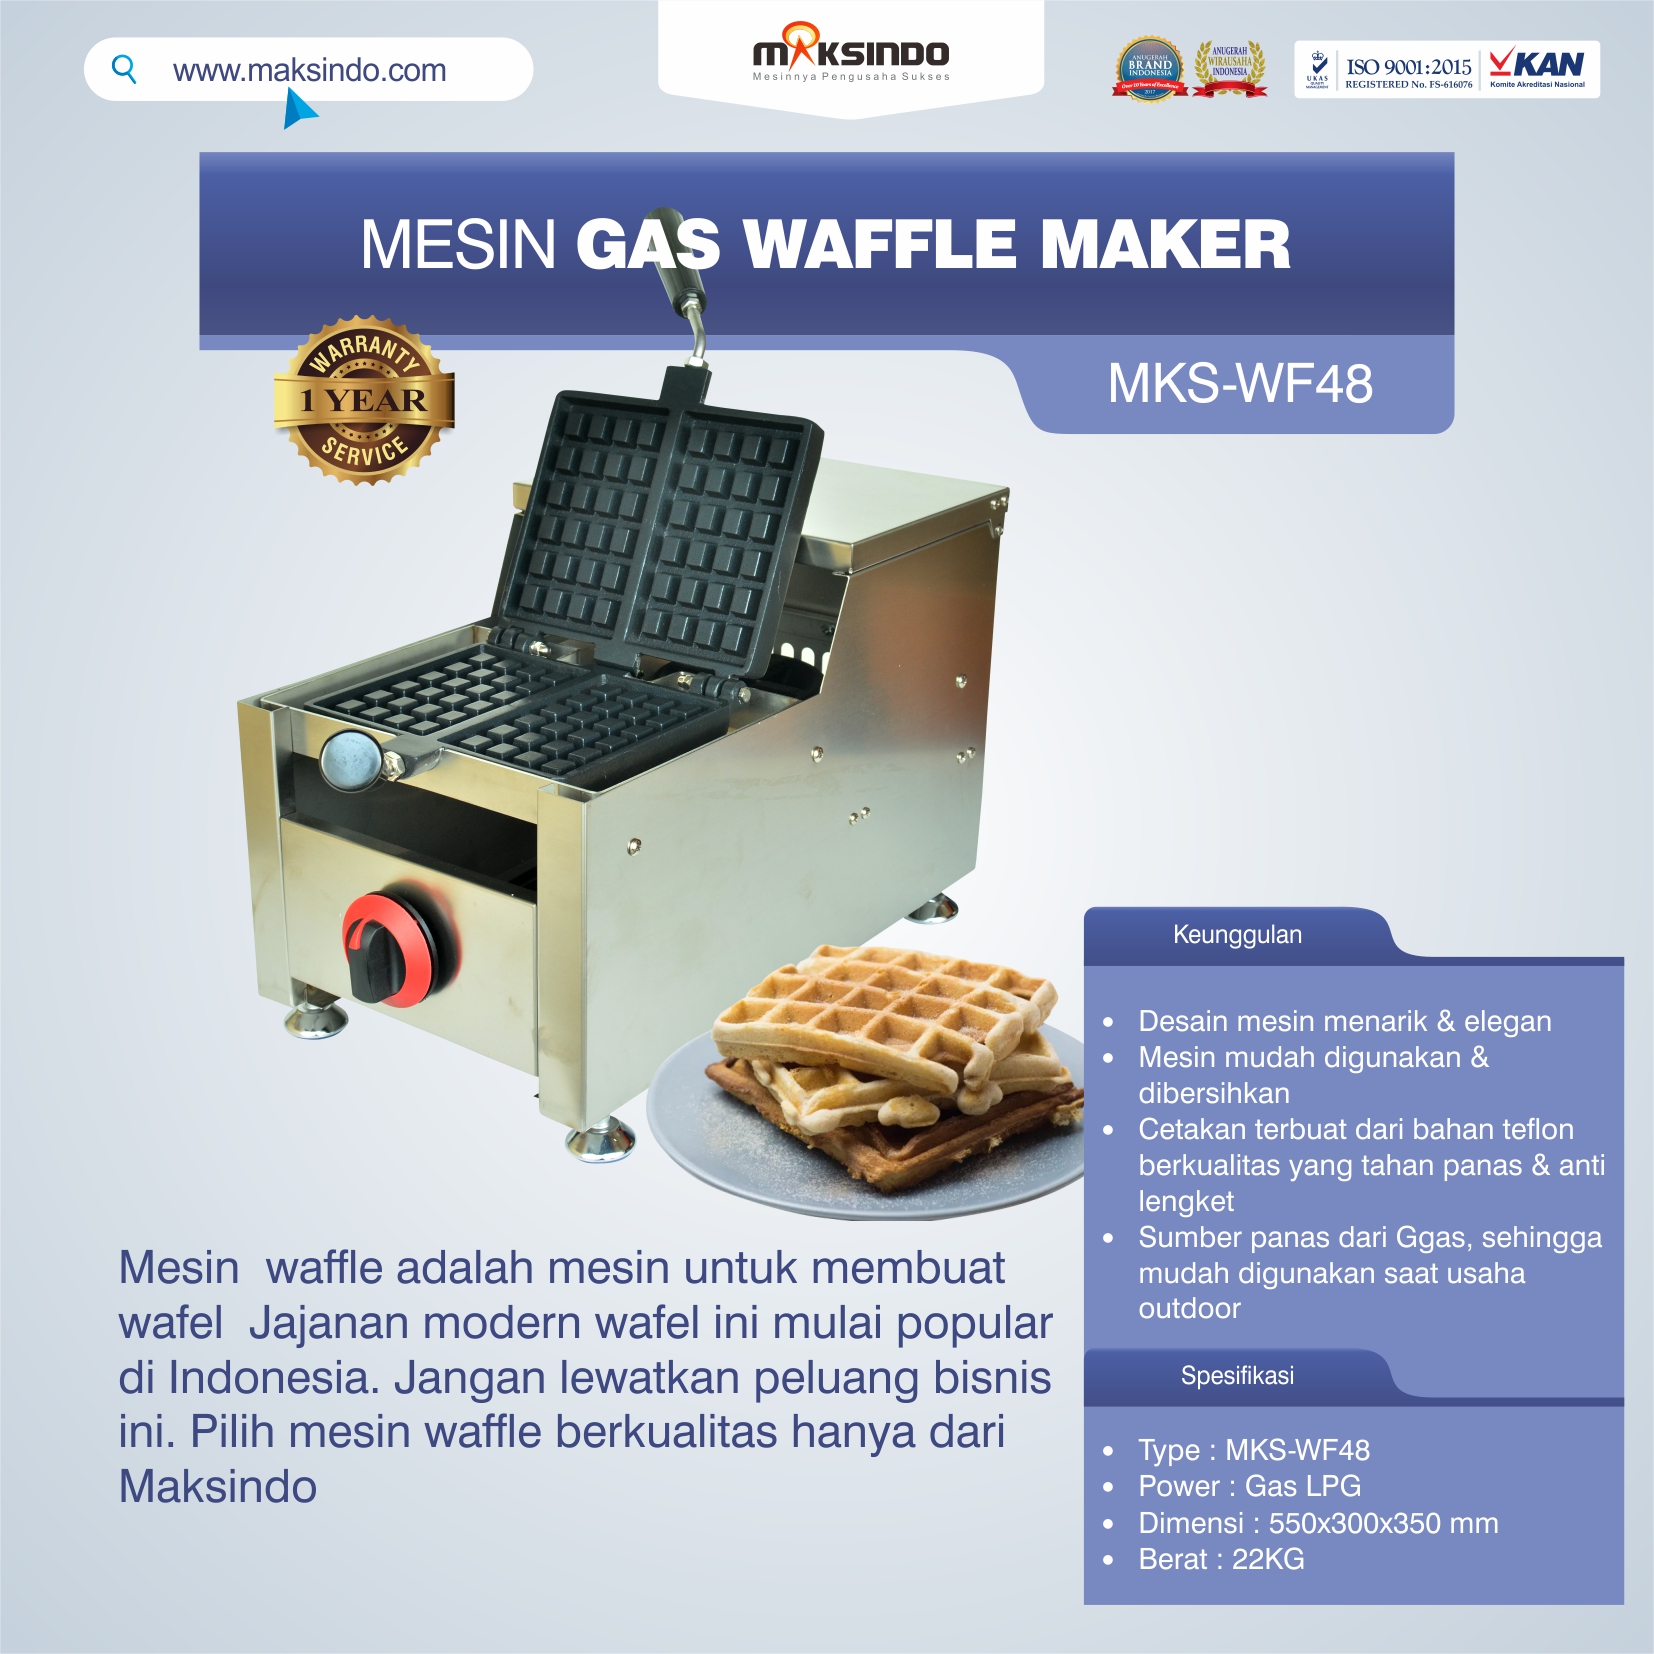 Jual Mesin Gas Waffle Maker MKS-WF48 di Tangerang